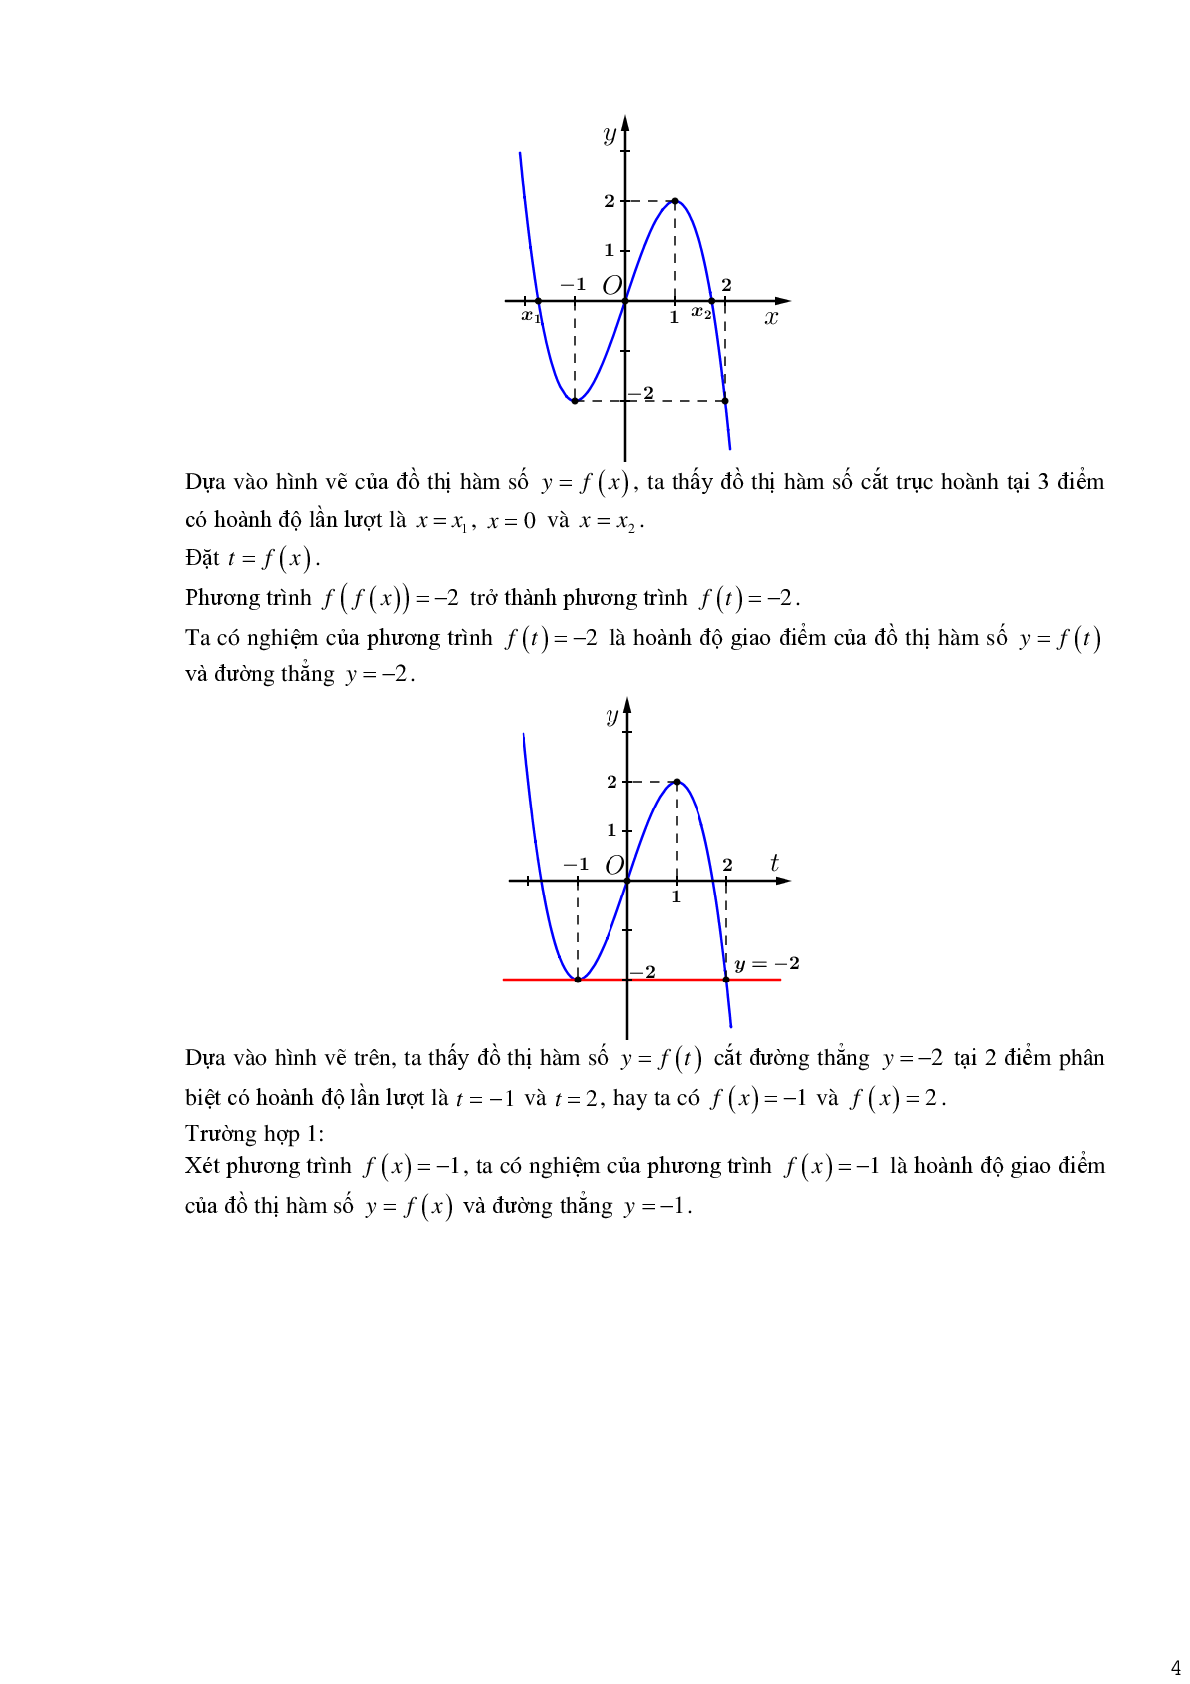 Tìm số nghiệm phương trình hàm hợp (trang 4)